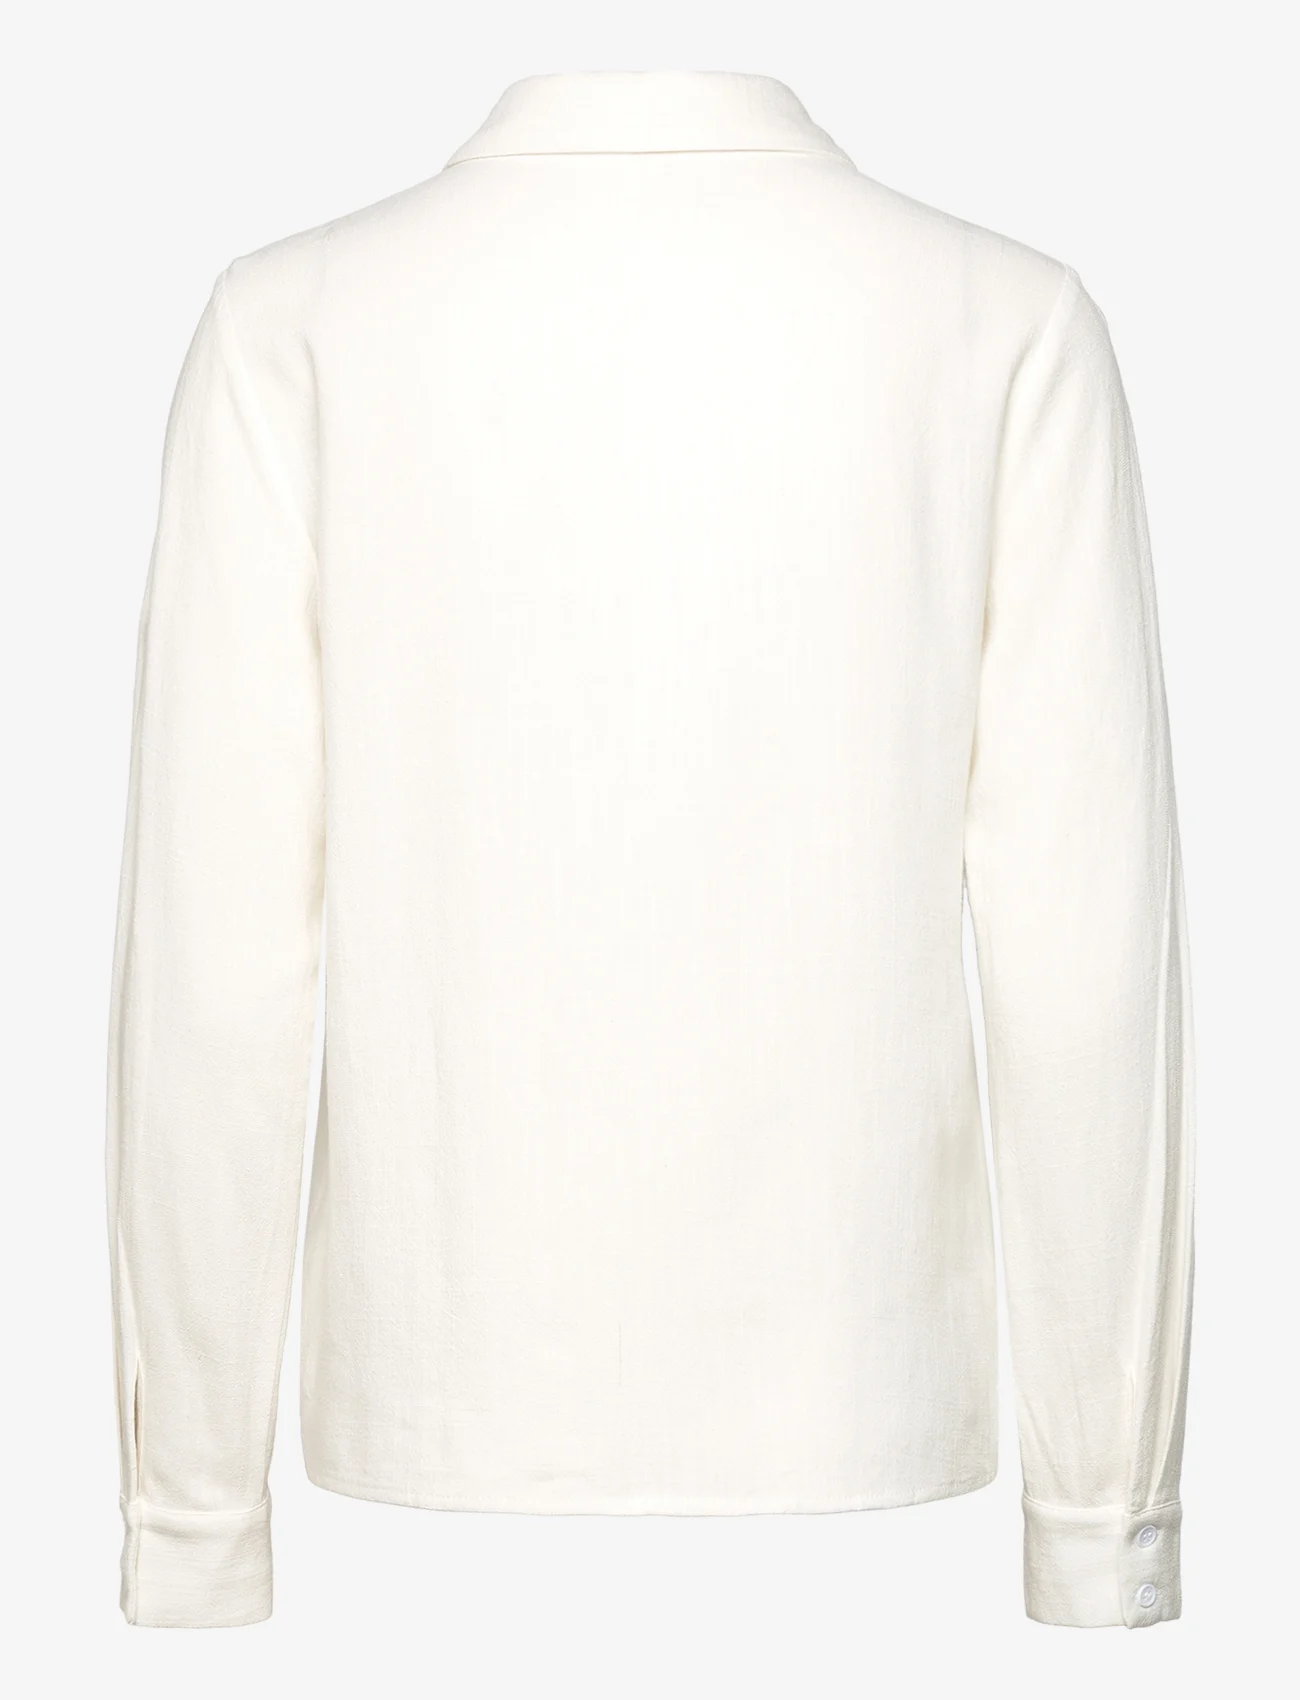 A-View - Lerke shirt - linskjorter - white - 1